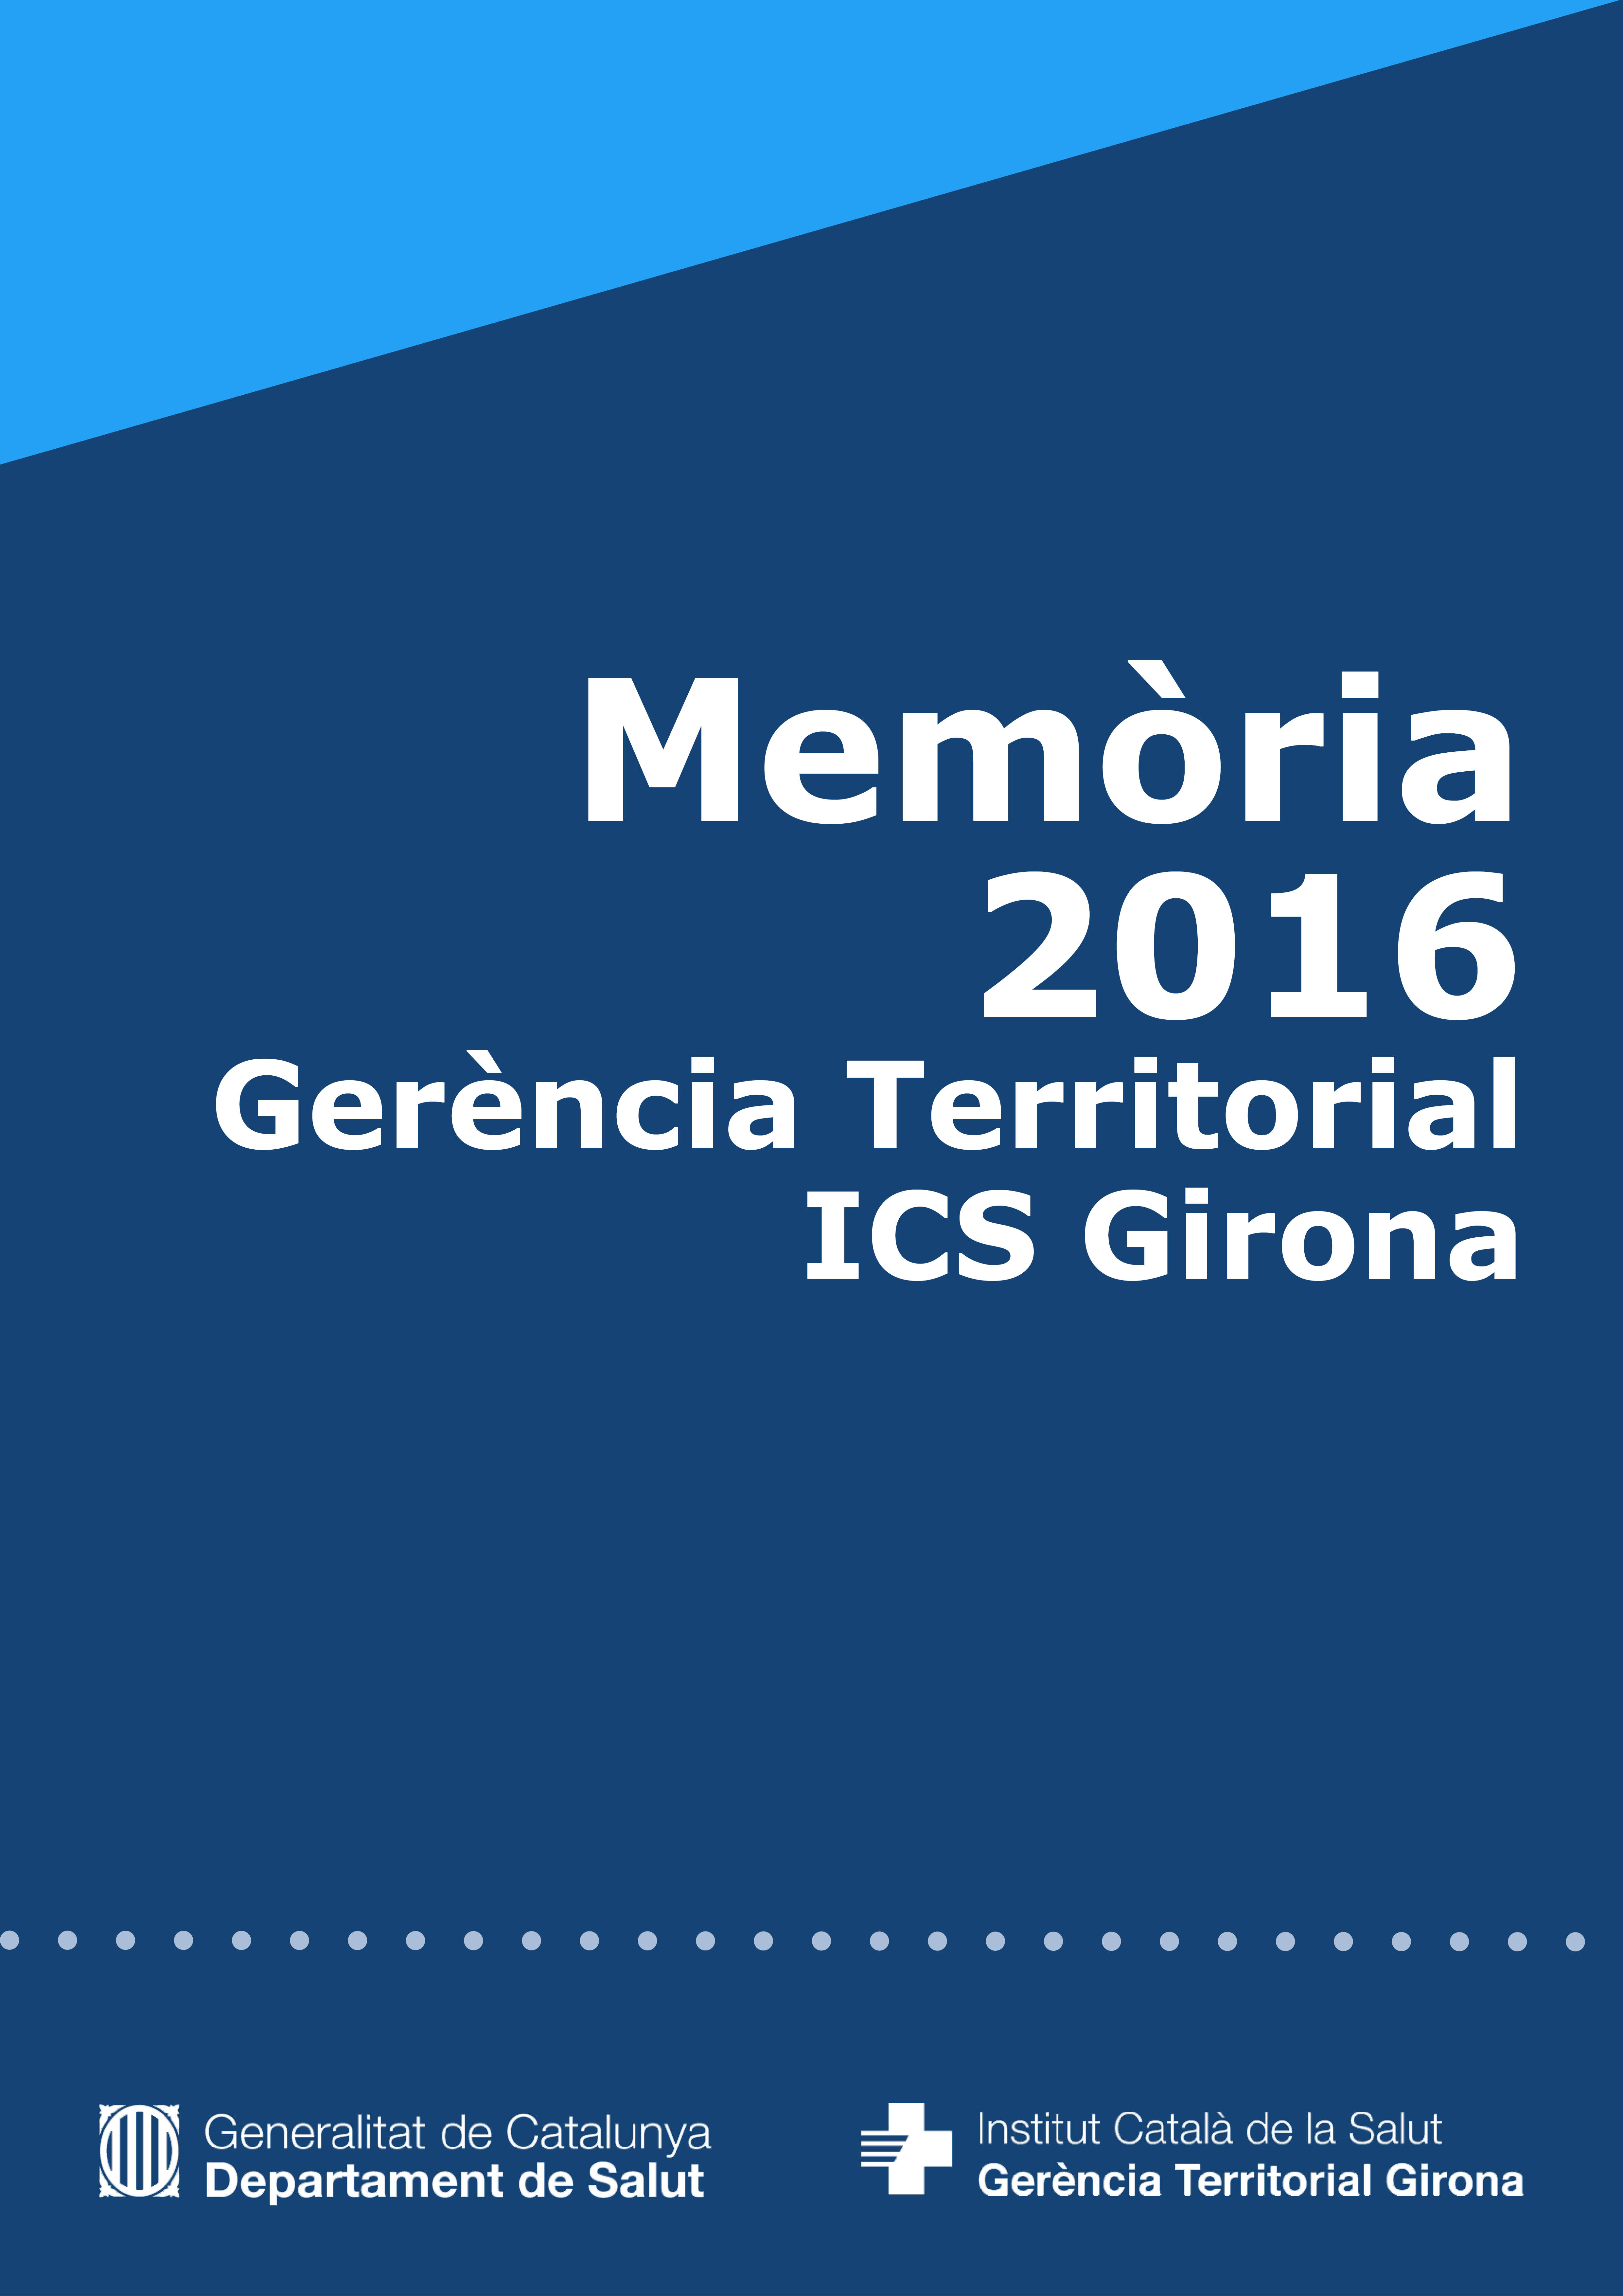 Memòria de l'Institut Català de la Salut de la Gerència Territorial Girona 2016